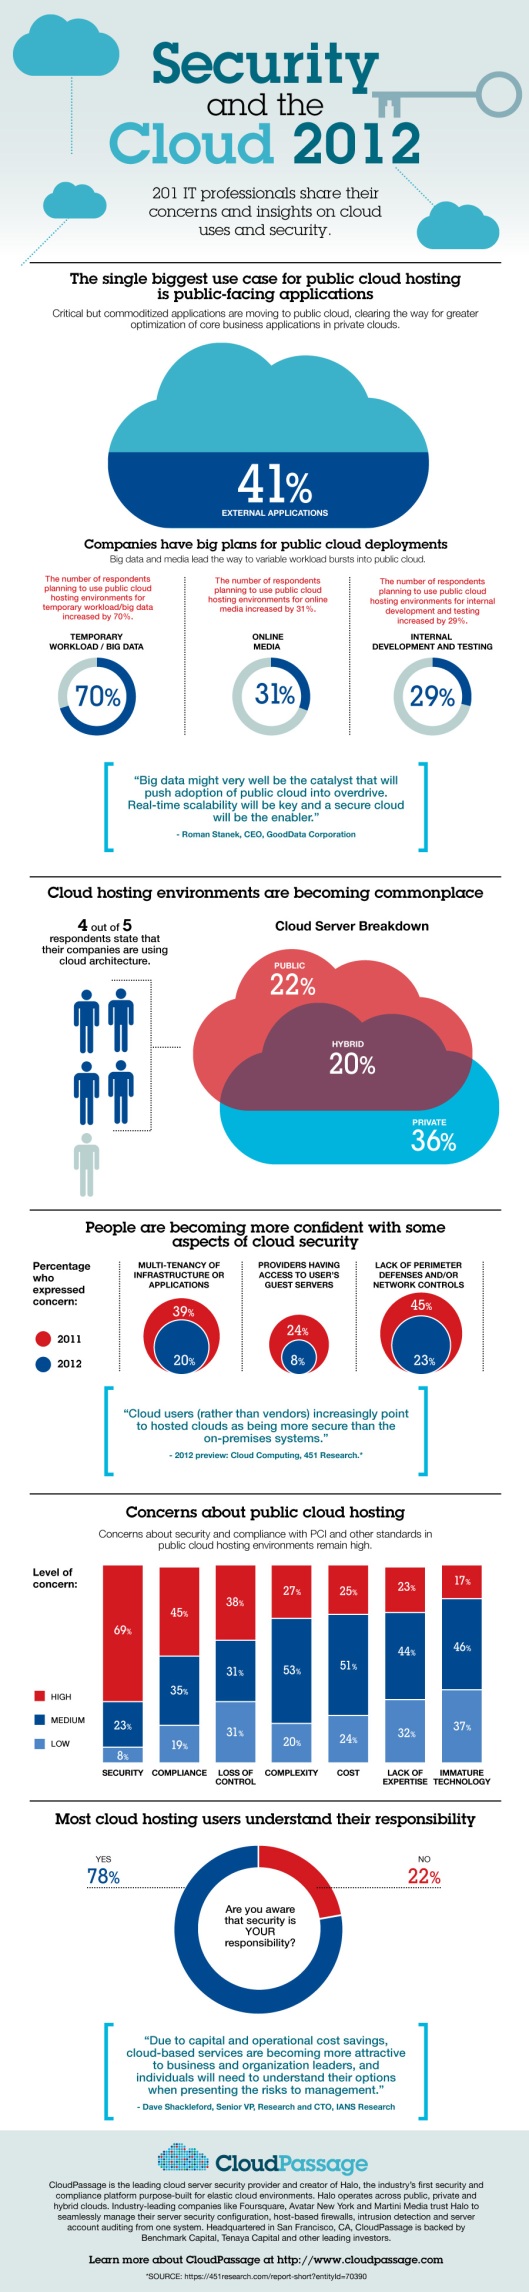 Cloud_security_Survey_2012-infographic